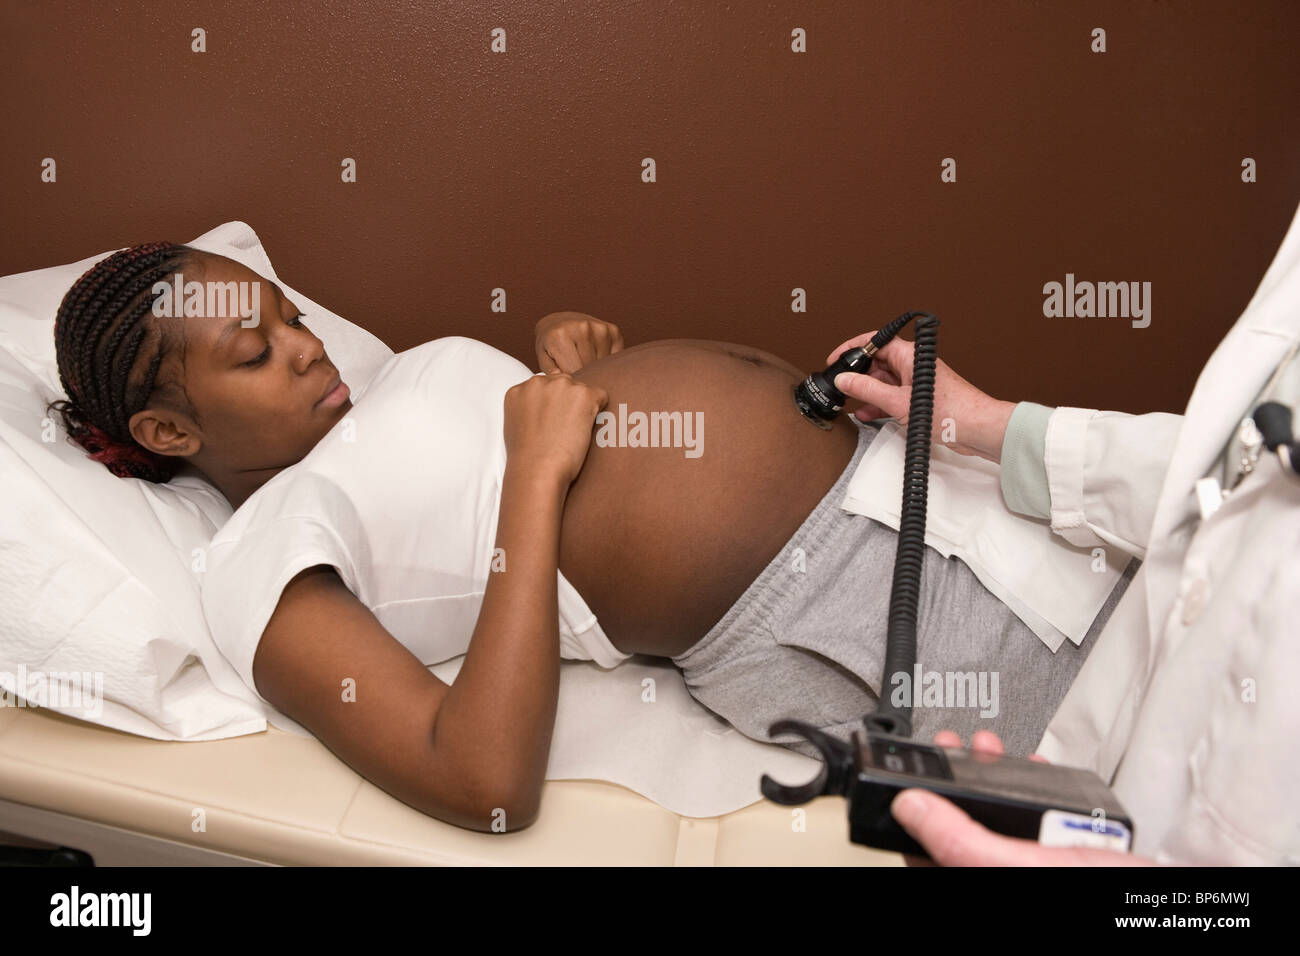 Une femme enceinte qui reçoit une échographie Banque D'Images